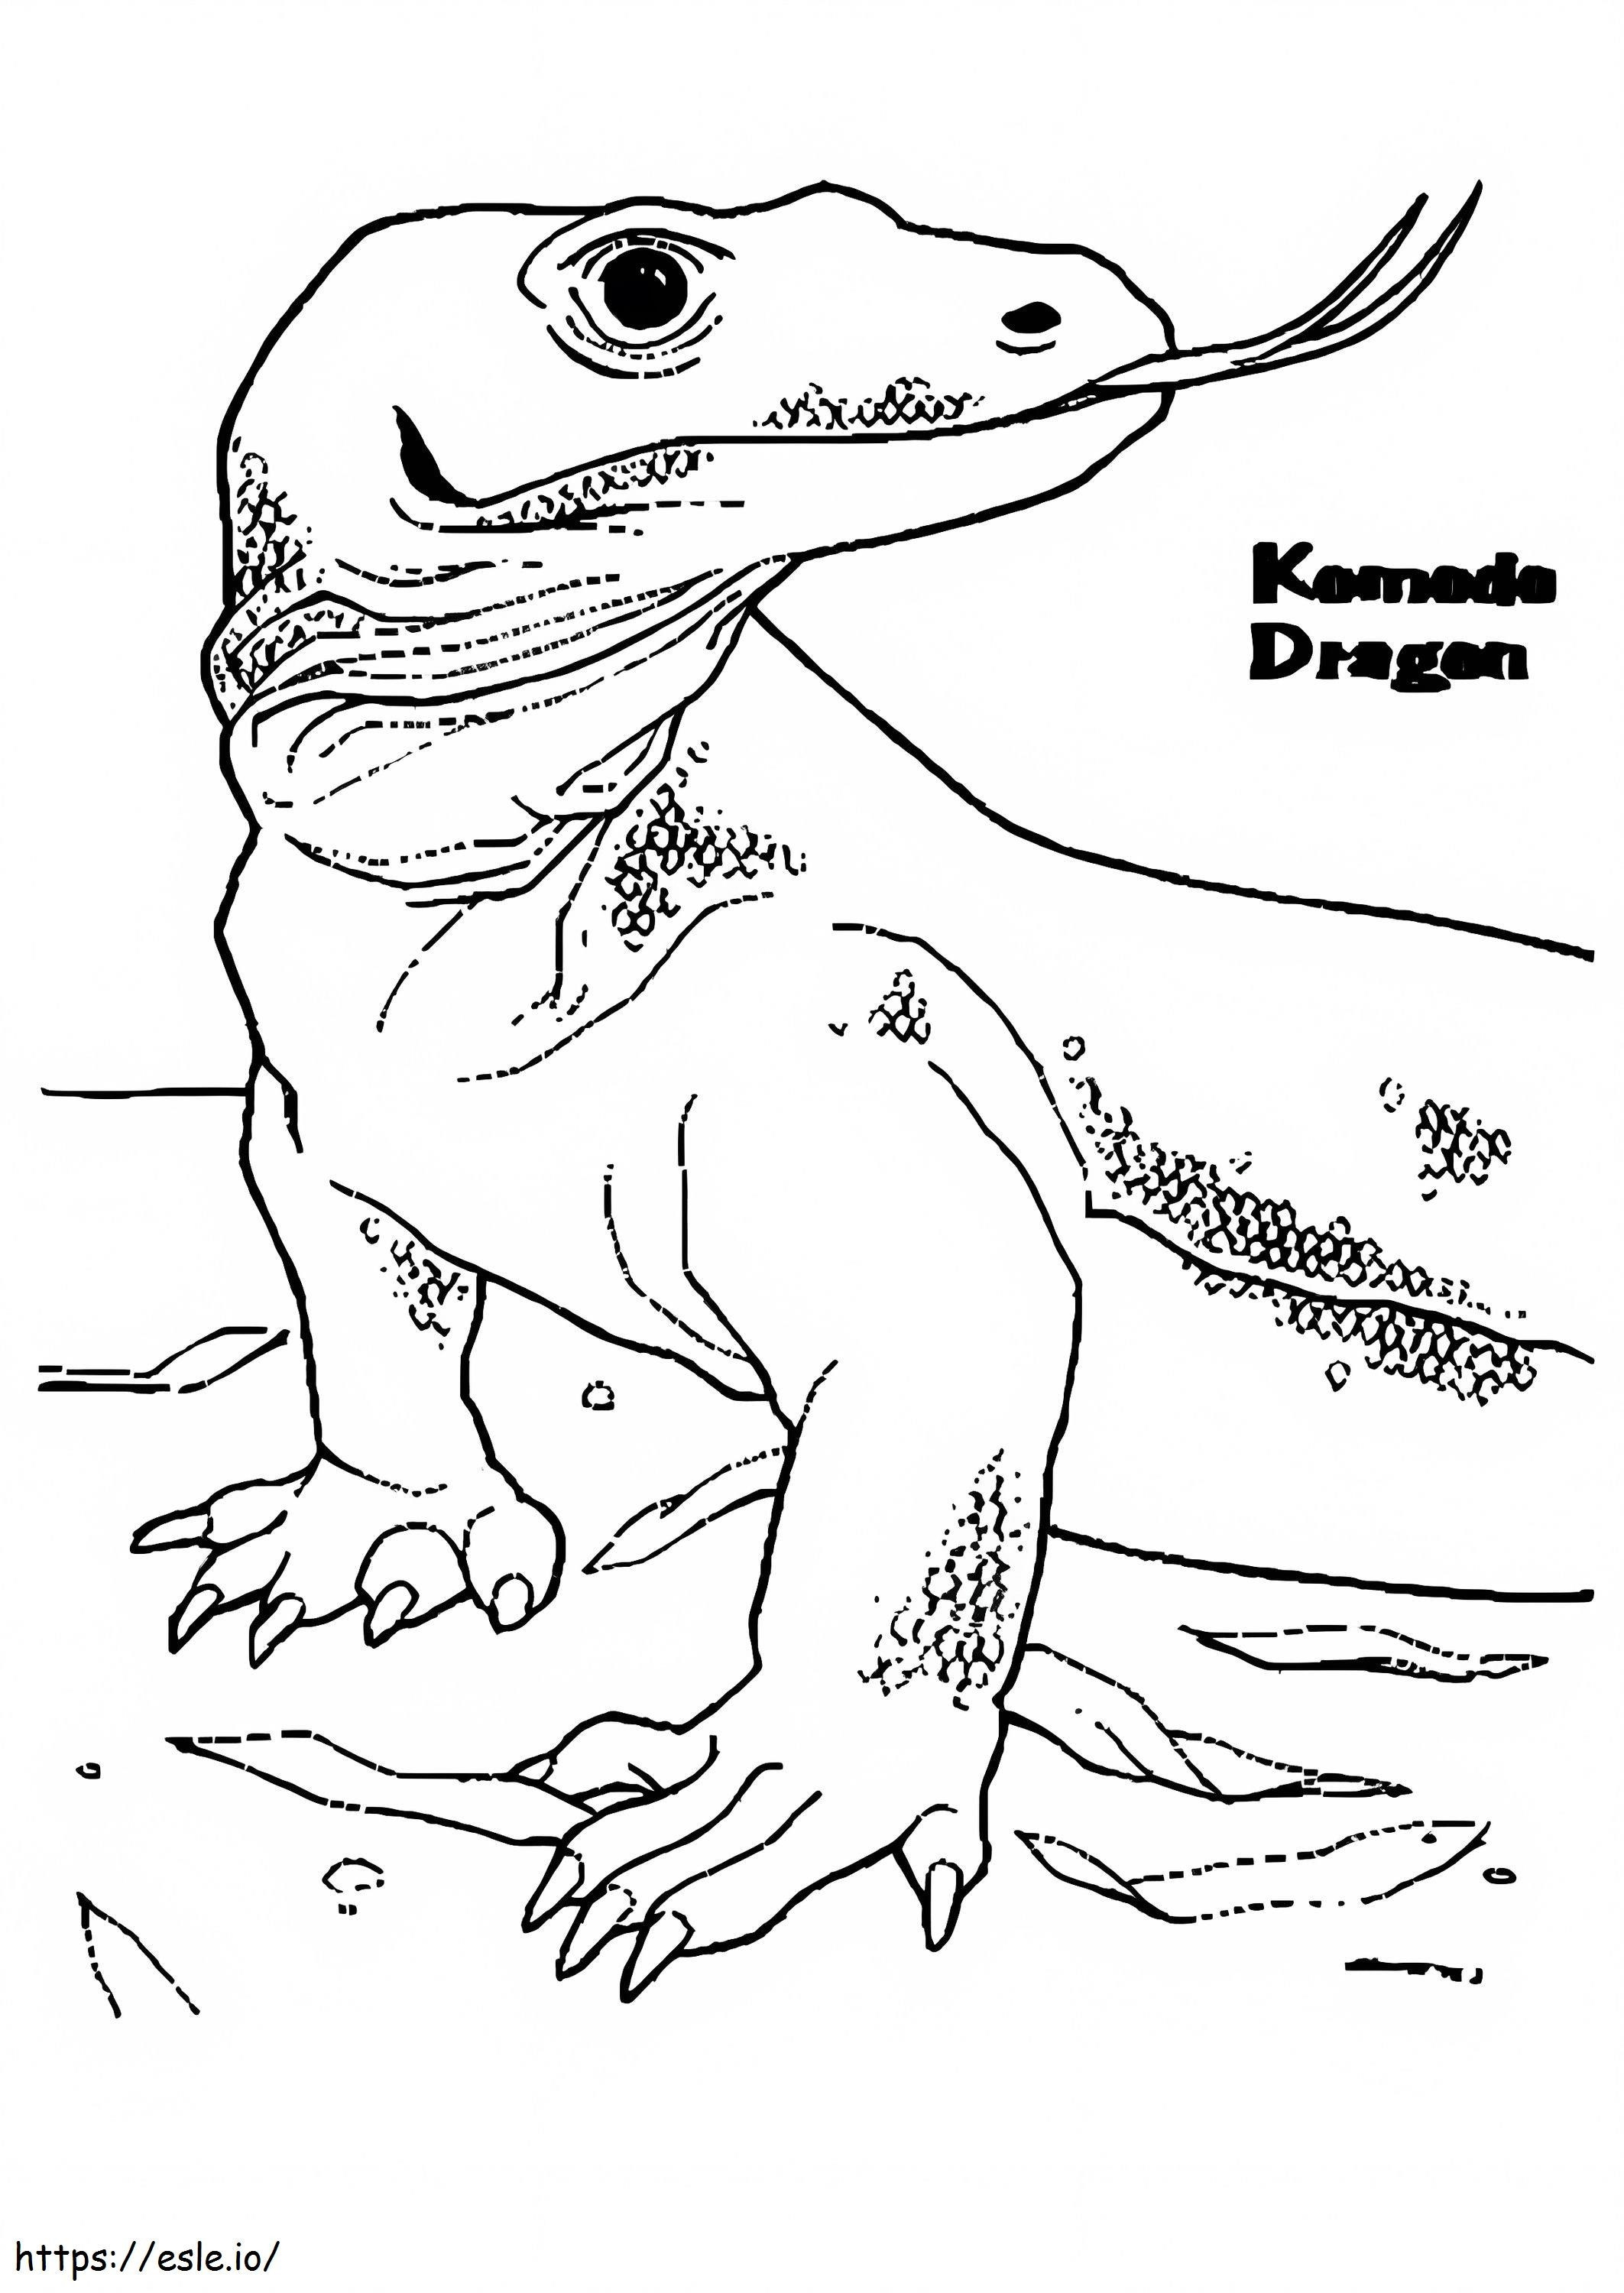 Dragão de Komodo 3 para colorir